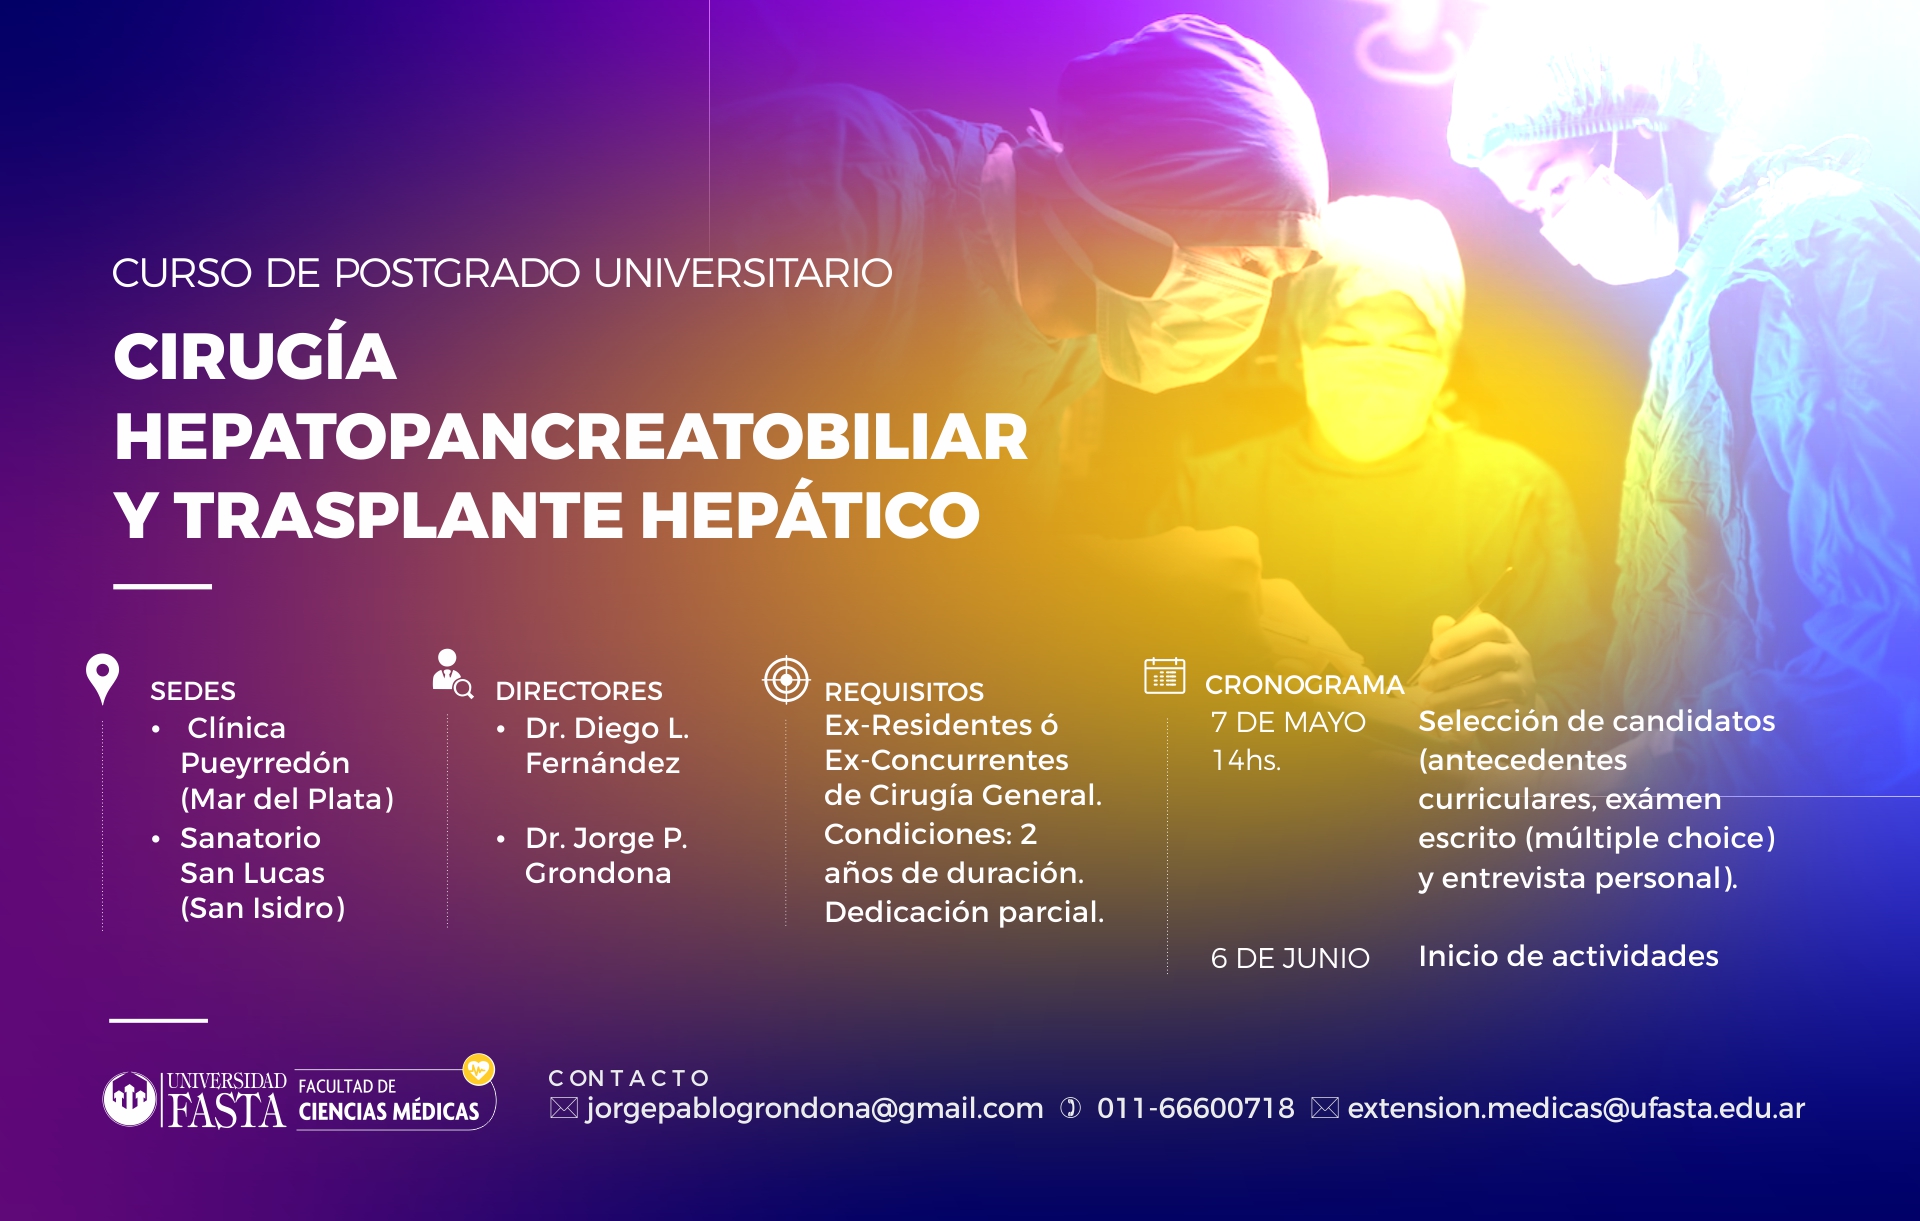 Curso Universitario de Postgrado en Cirugía Hepatopancreatobiliar y Trasplante Hepático 2022